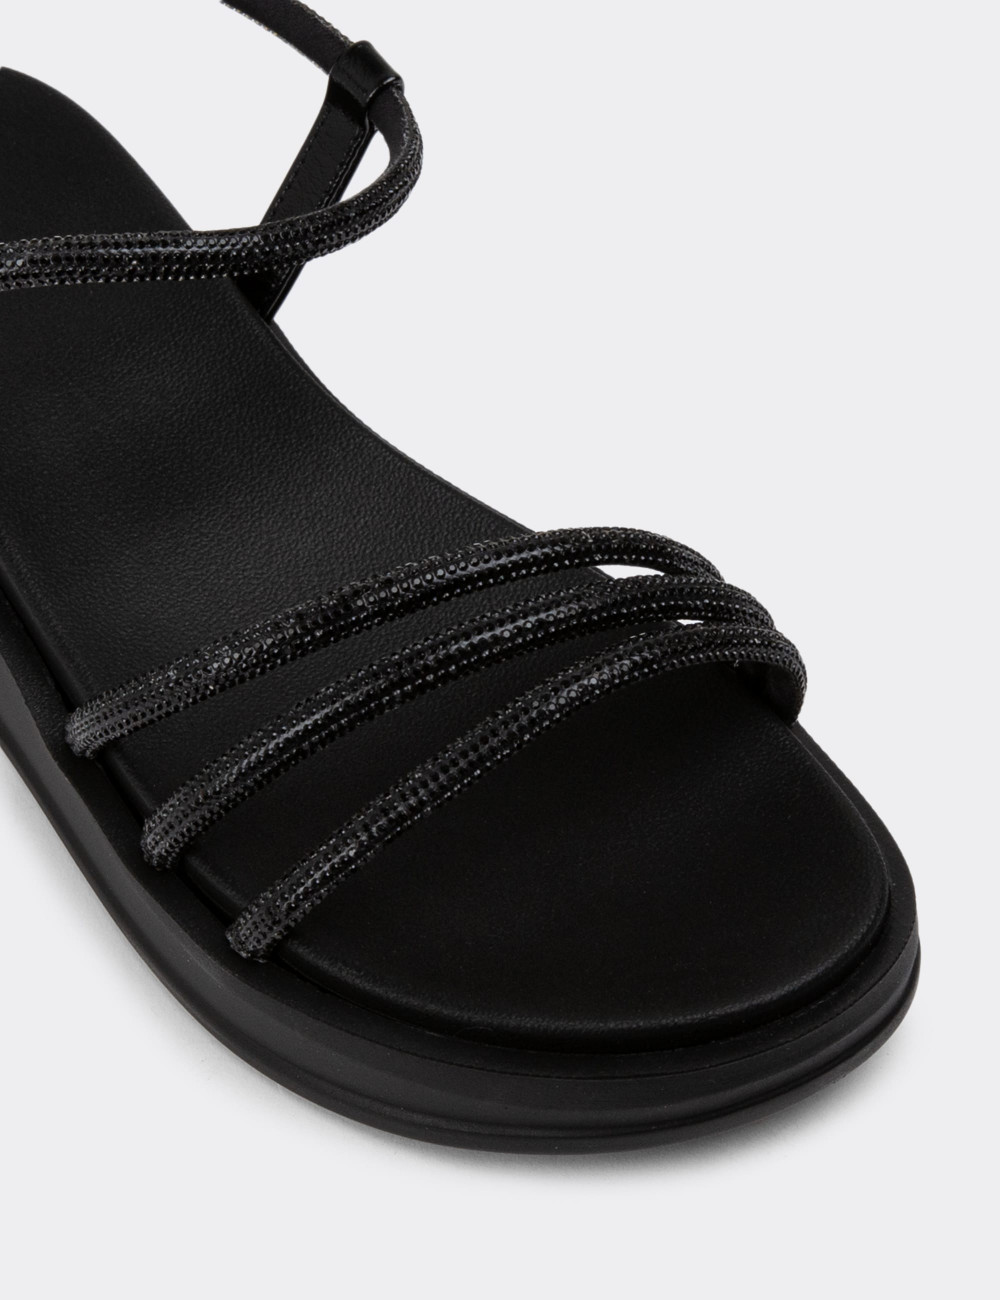 Siyah Taşlı Kadın Sandalet - K4013ZSYHC01